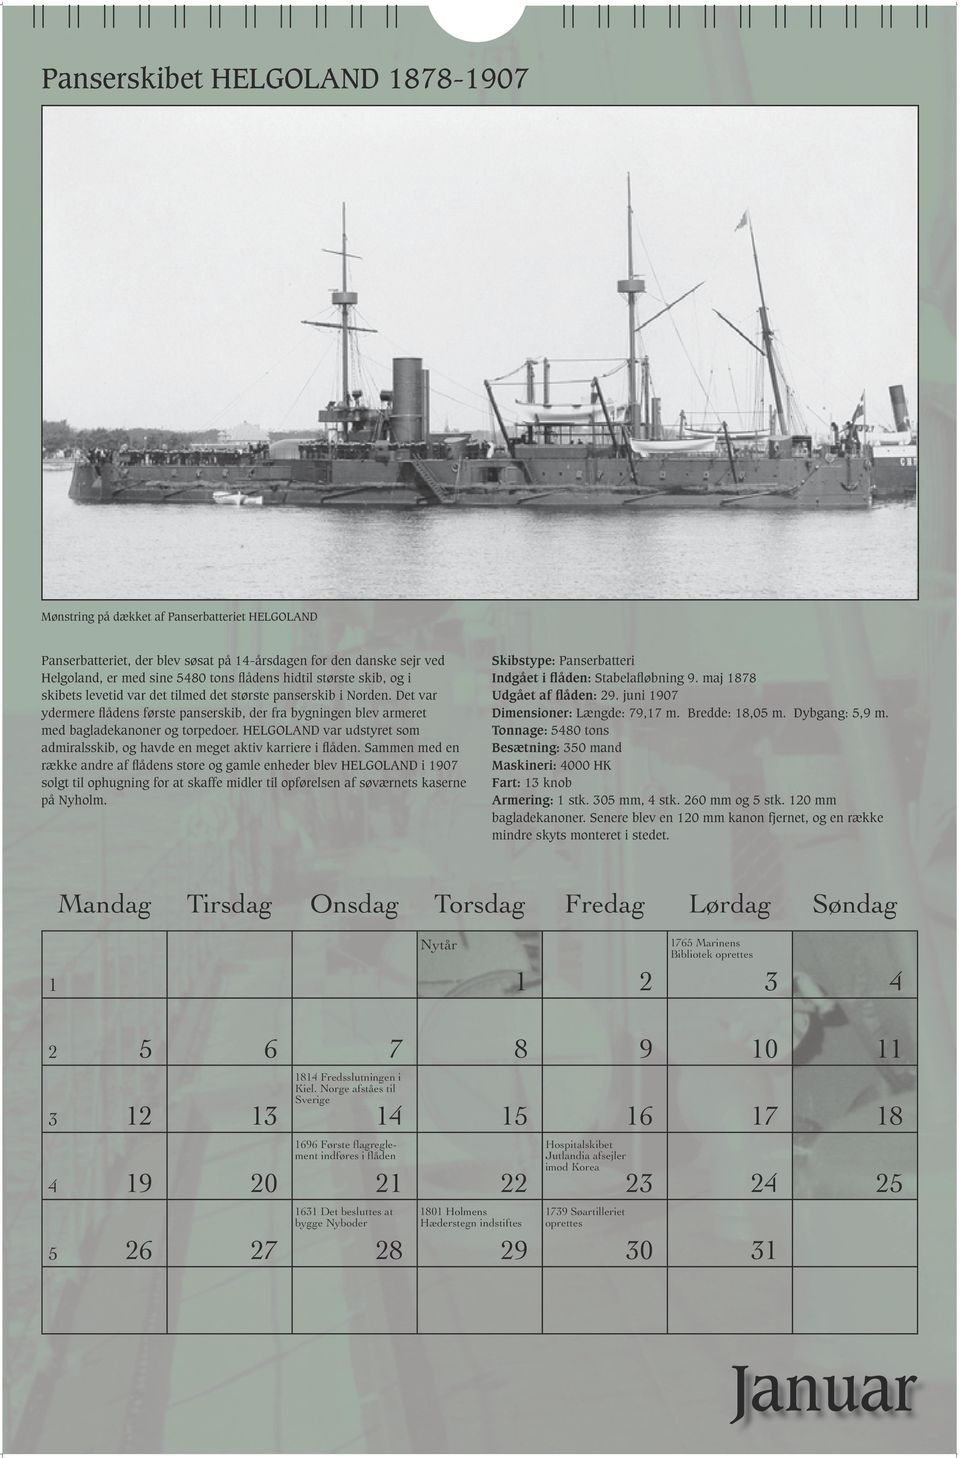 HELGOLAND var udstyret som admiralsskib, og havde en meget aktiv karriere i flåden.